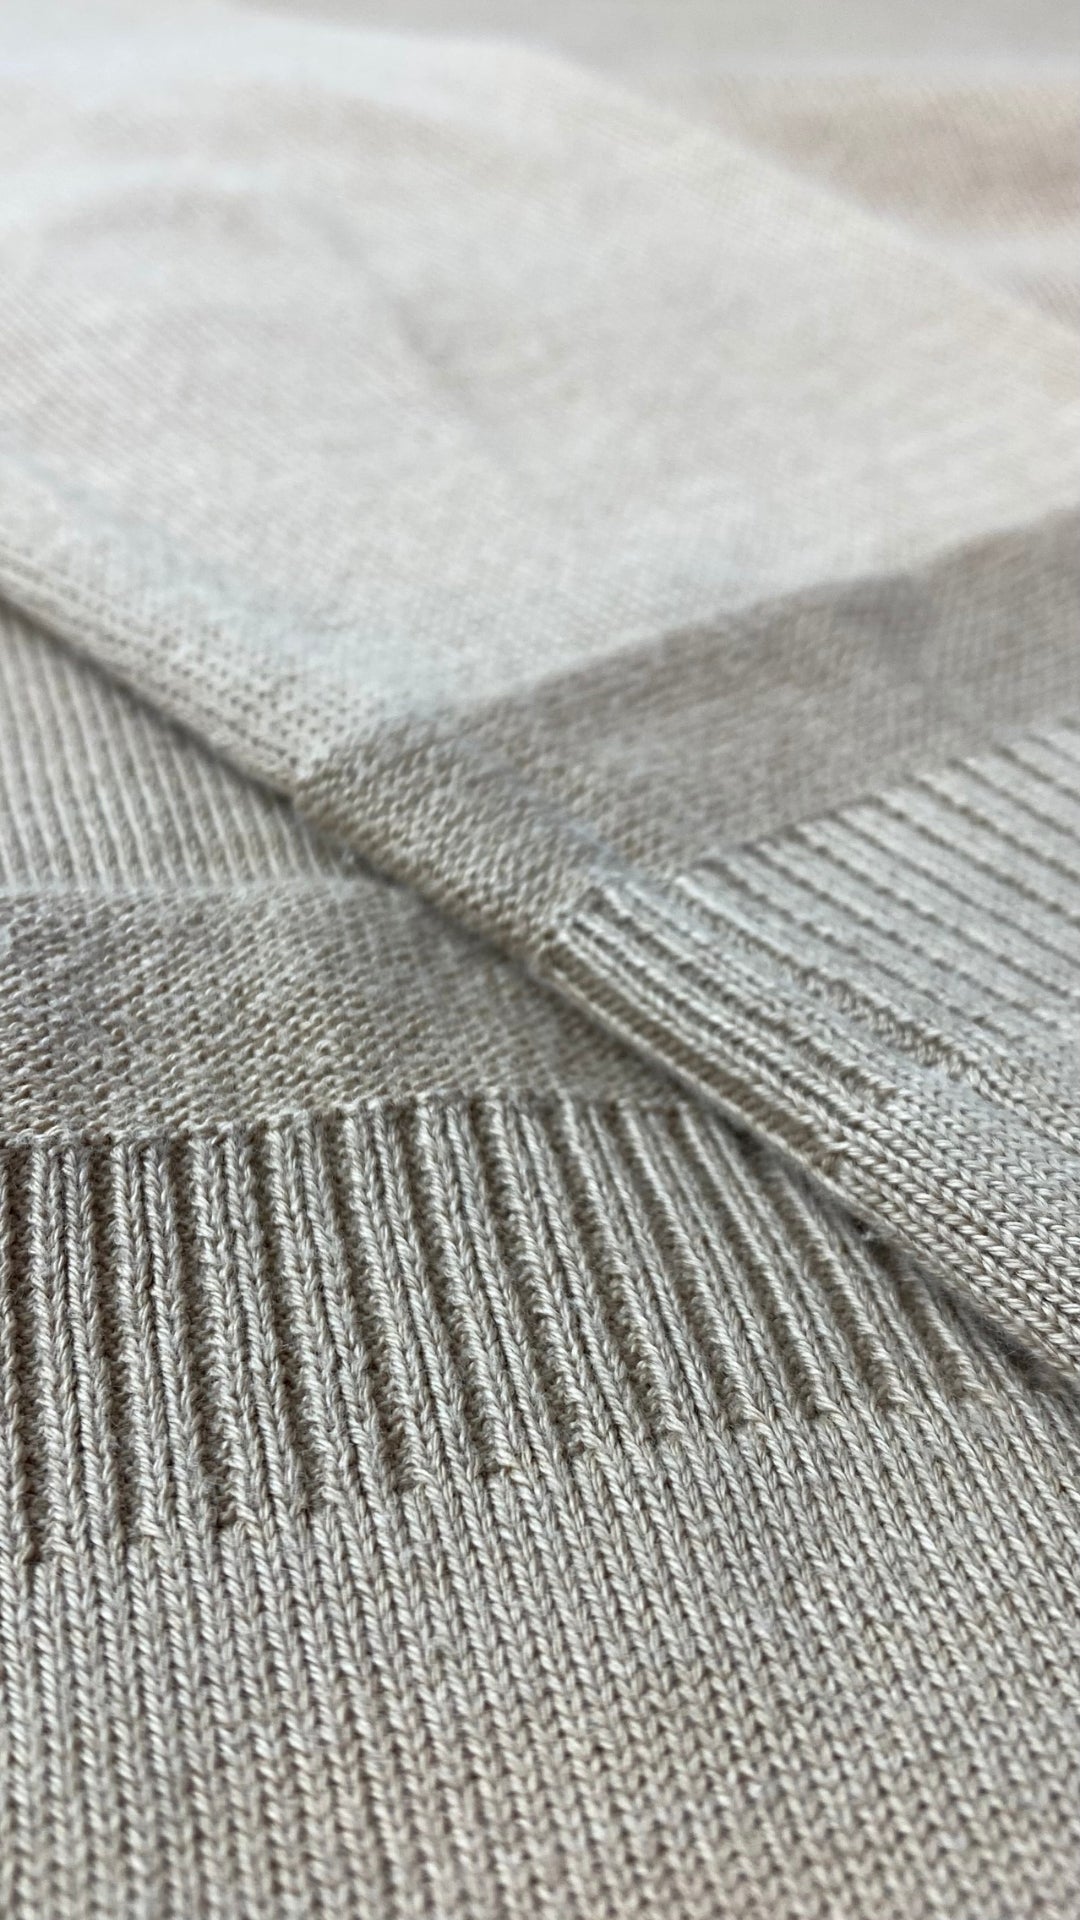 Chandail long tricot coton egyptien Ca va de soi, taille xs/s. Vue de près du tricot.